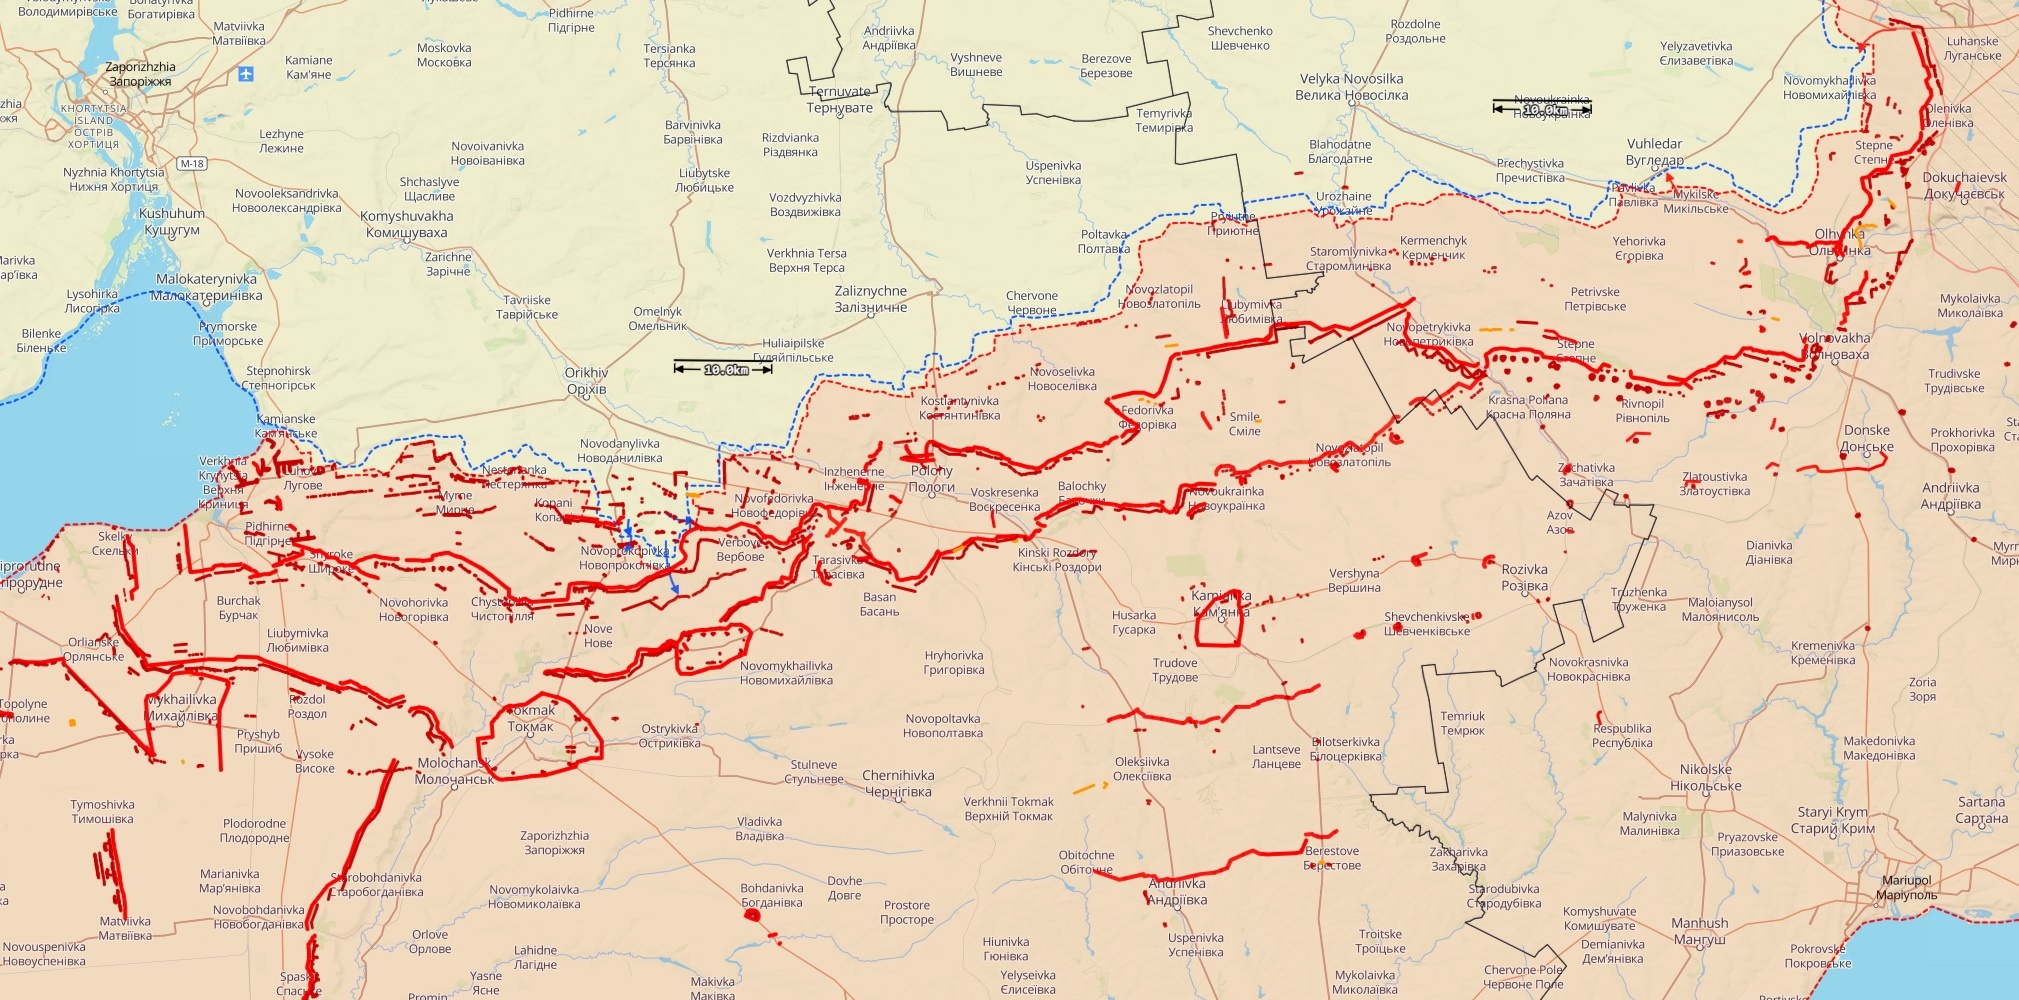 Etelä-Ukrainan rintamatilanne 28. elokuuta. Siniset nuolet ovat Ukrainan hyökkäyksiä, punaiset Venäjän. Paksummat punaiset merkinnät ovat tiedettyjä Venäjän valmisteltuja puolustusasemia. Kartta: The War in Ukraine -tilannekartta / Black Bird Group